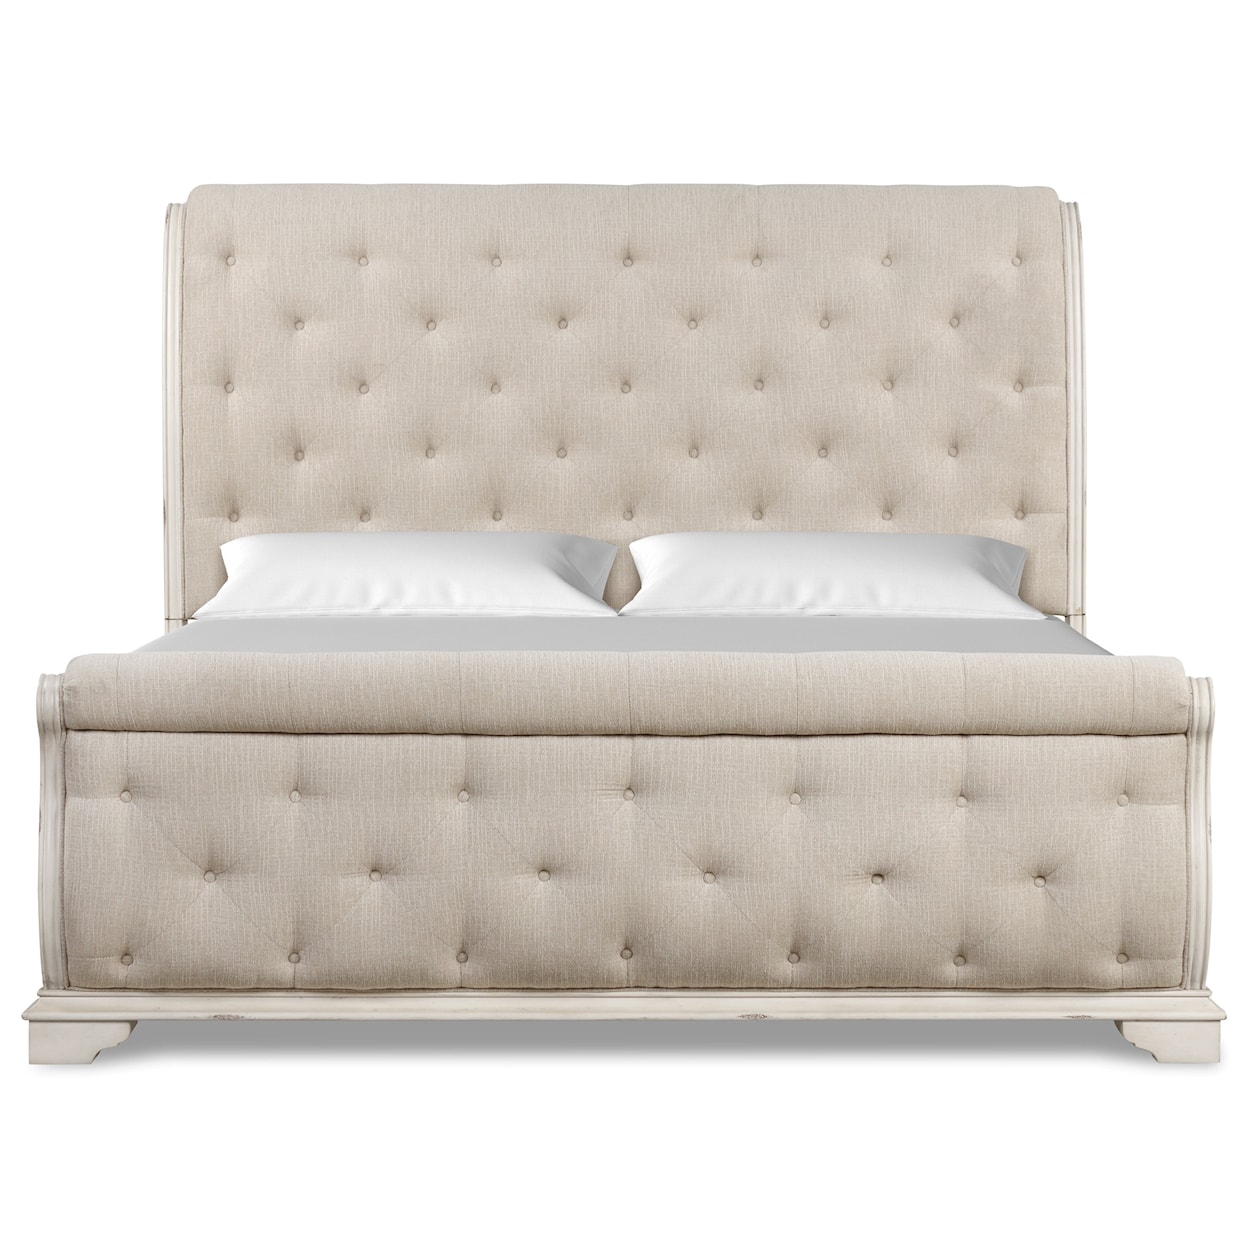 New Classic Anastasia Queen Bed